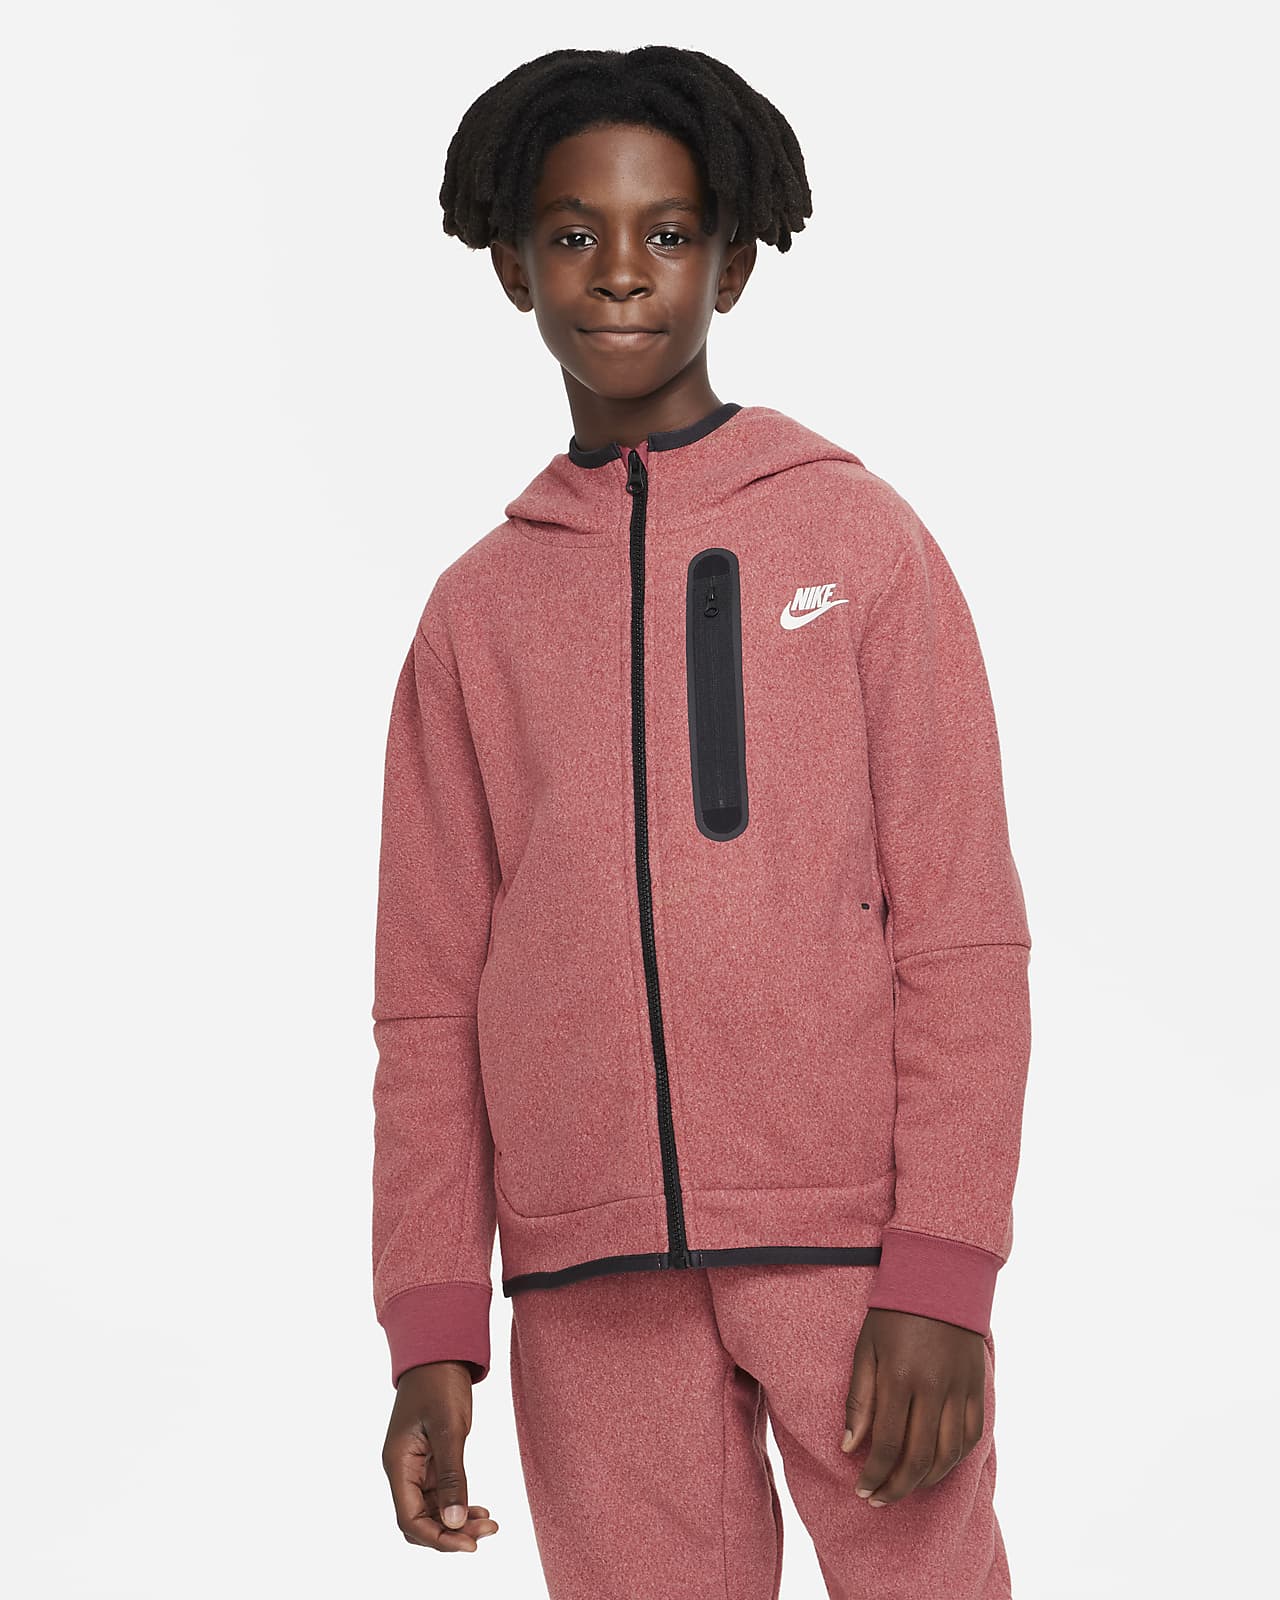 Verkoper Leven van Scheiden Nike Sportswear Tech Fleece Big Kids' (Boys') Winterized Full-Zip Hoodie.  Nike.com